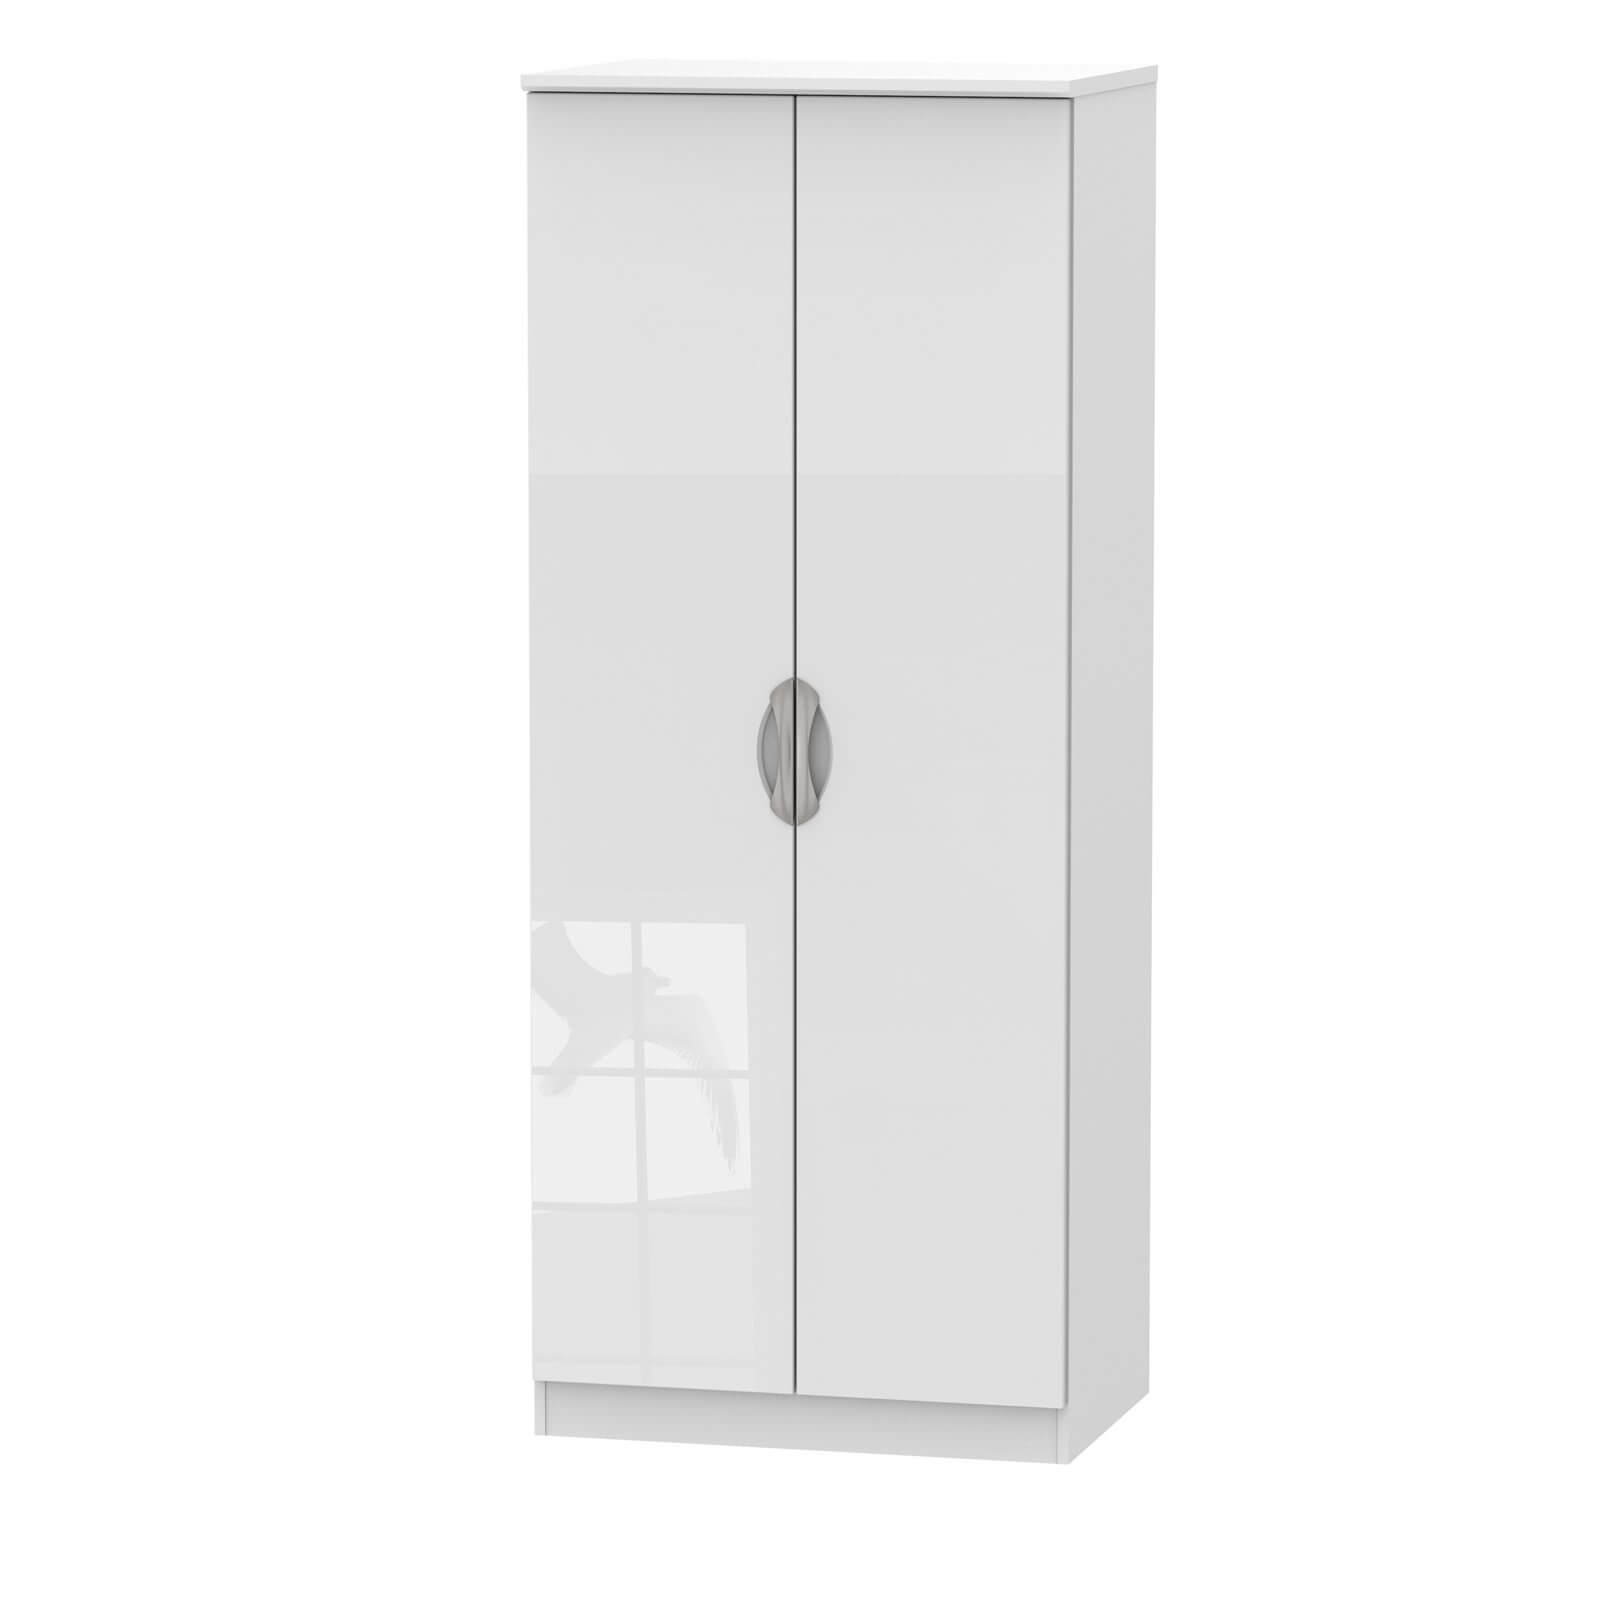 Photo of Portofino White Gloss 2 Door Wardrobe